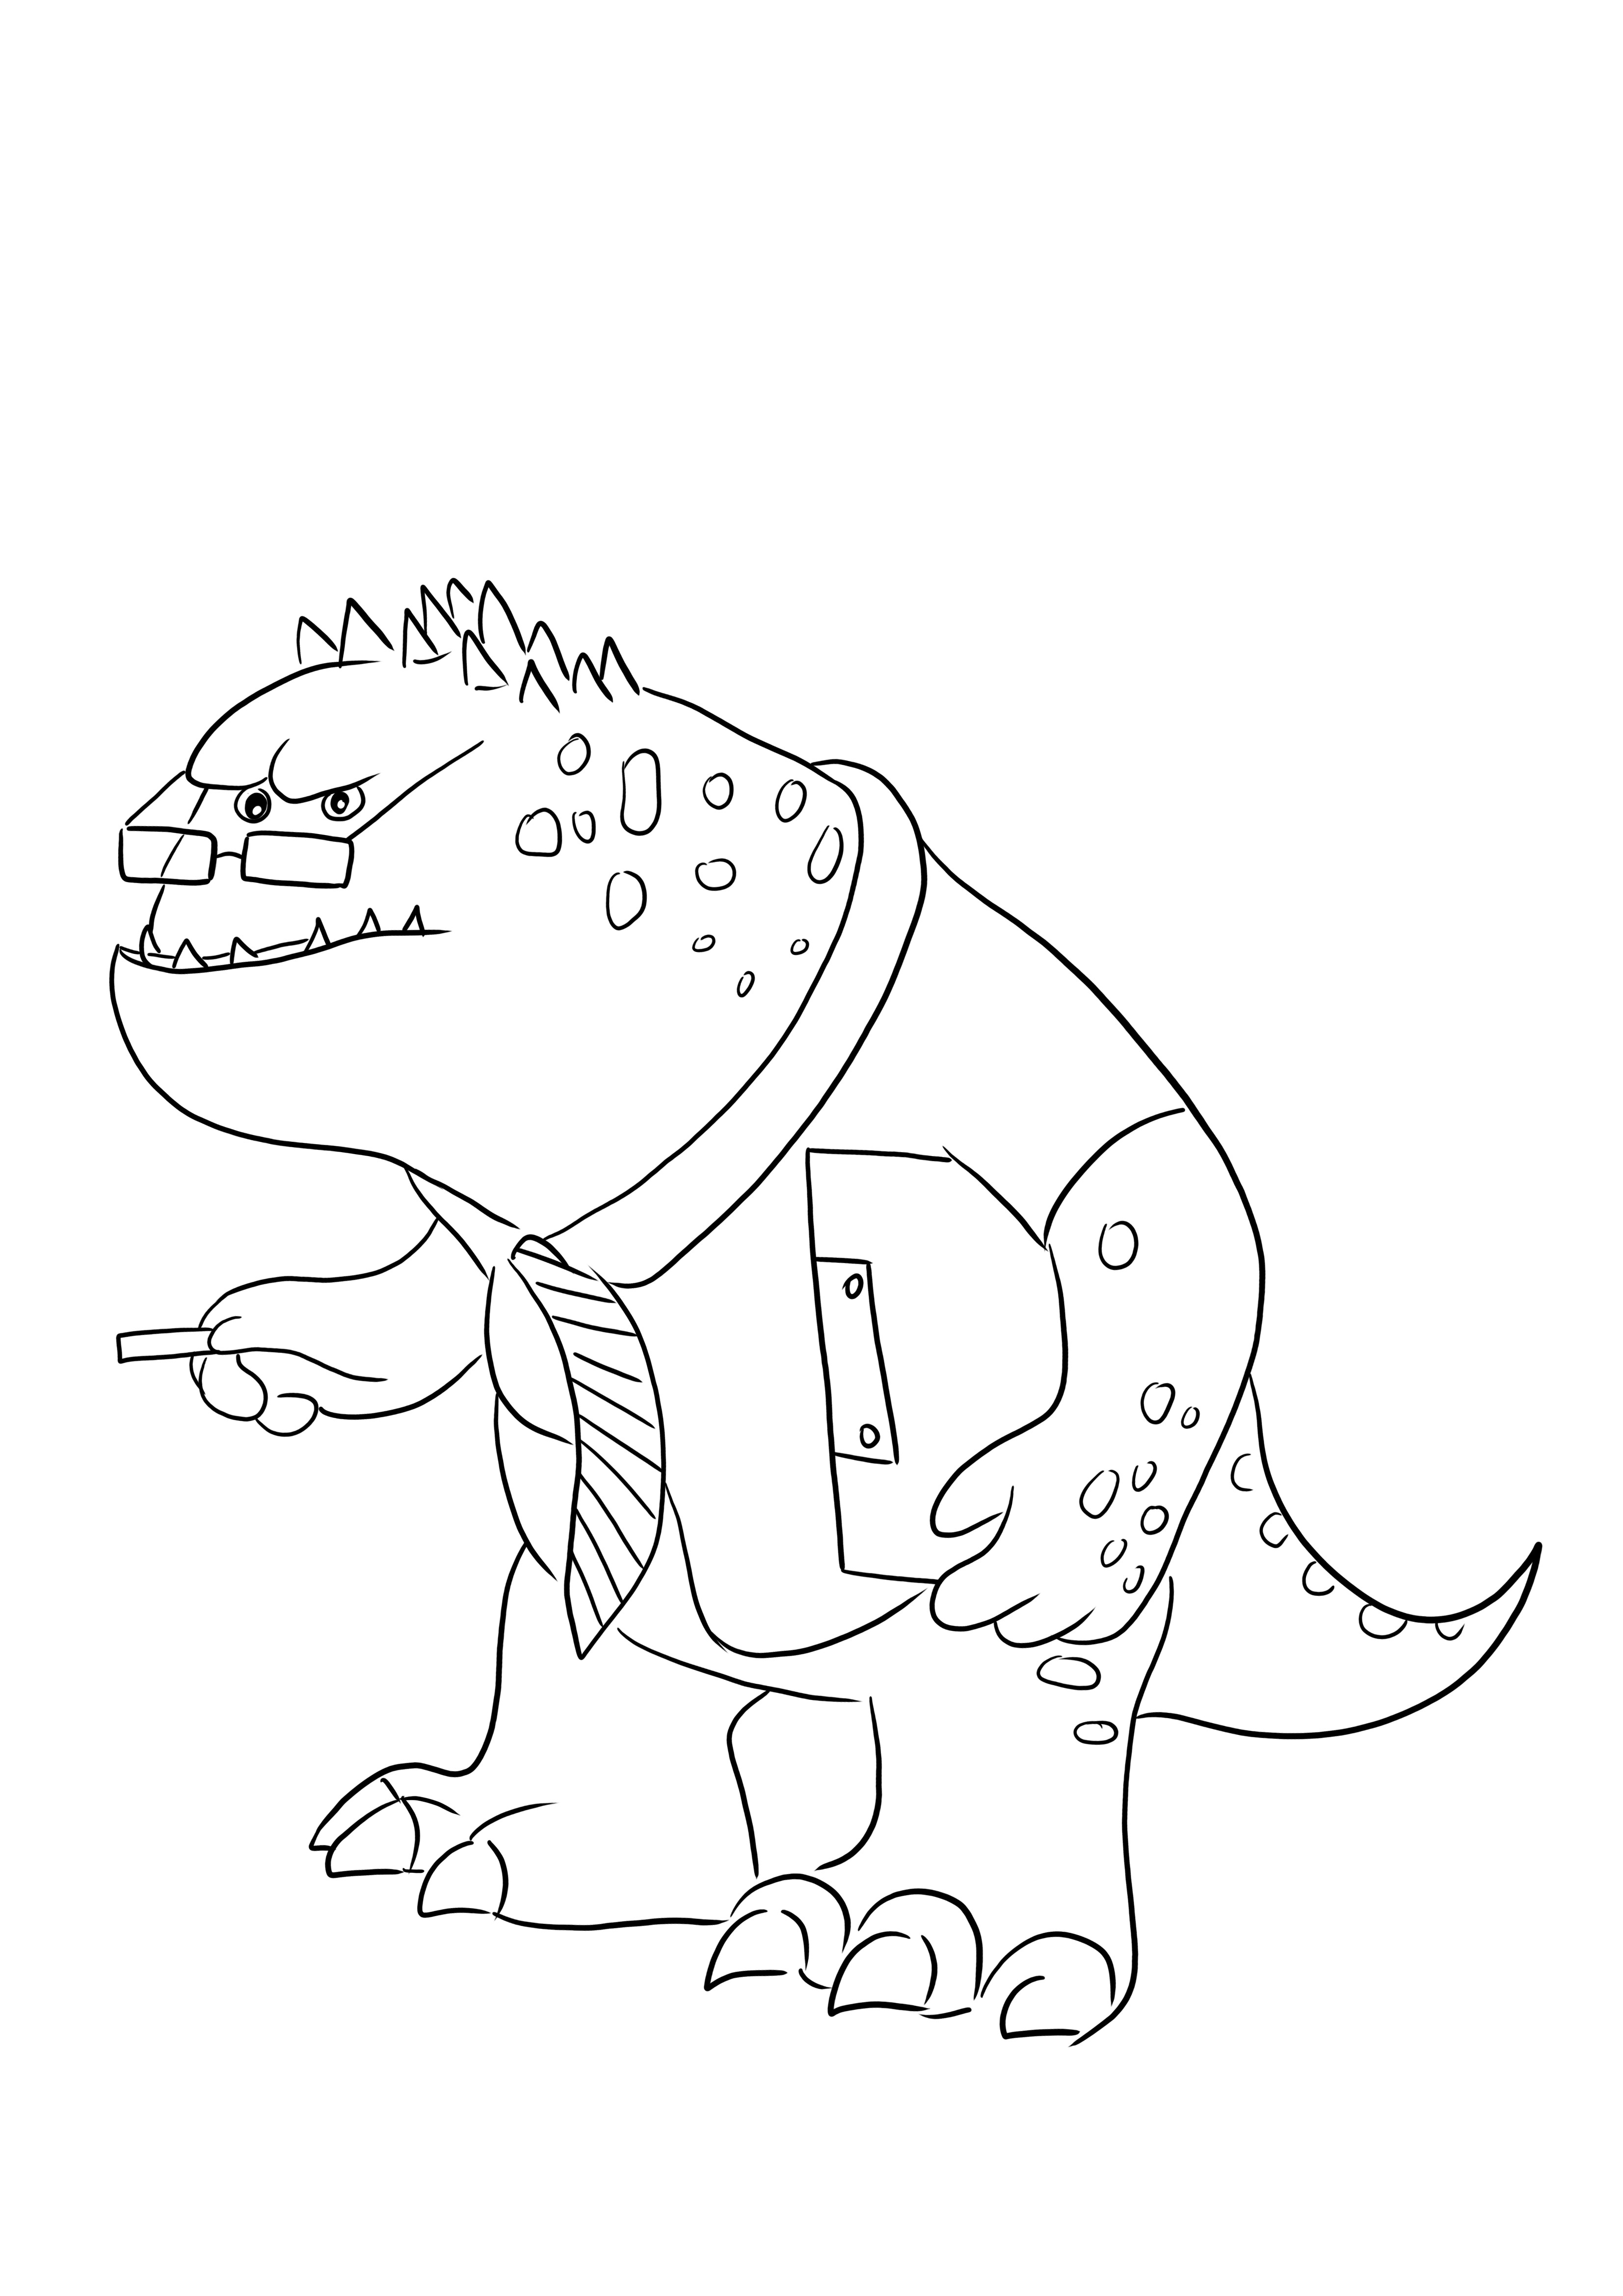 Strict Professor Knight-Monsters Inc'den komik bir karakterle boyama resmi ücretsiz indir